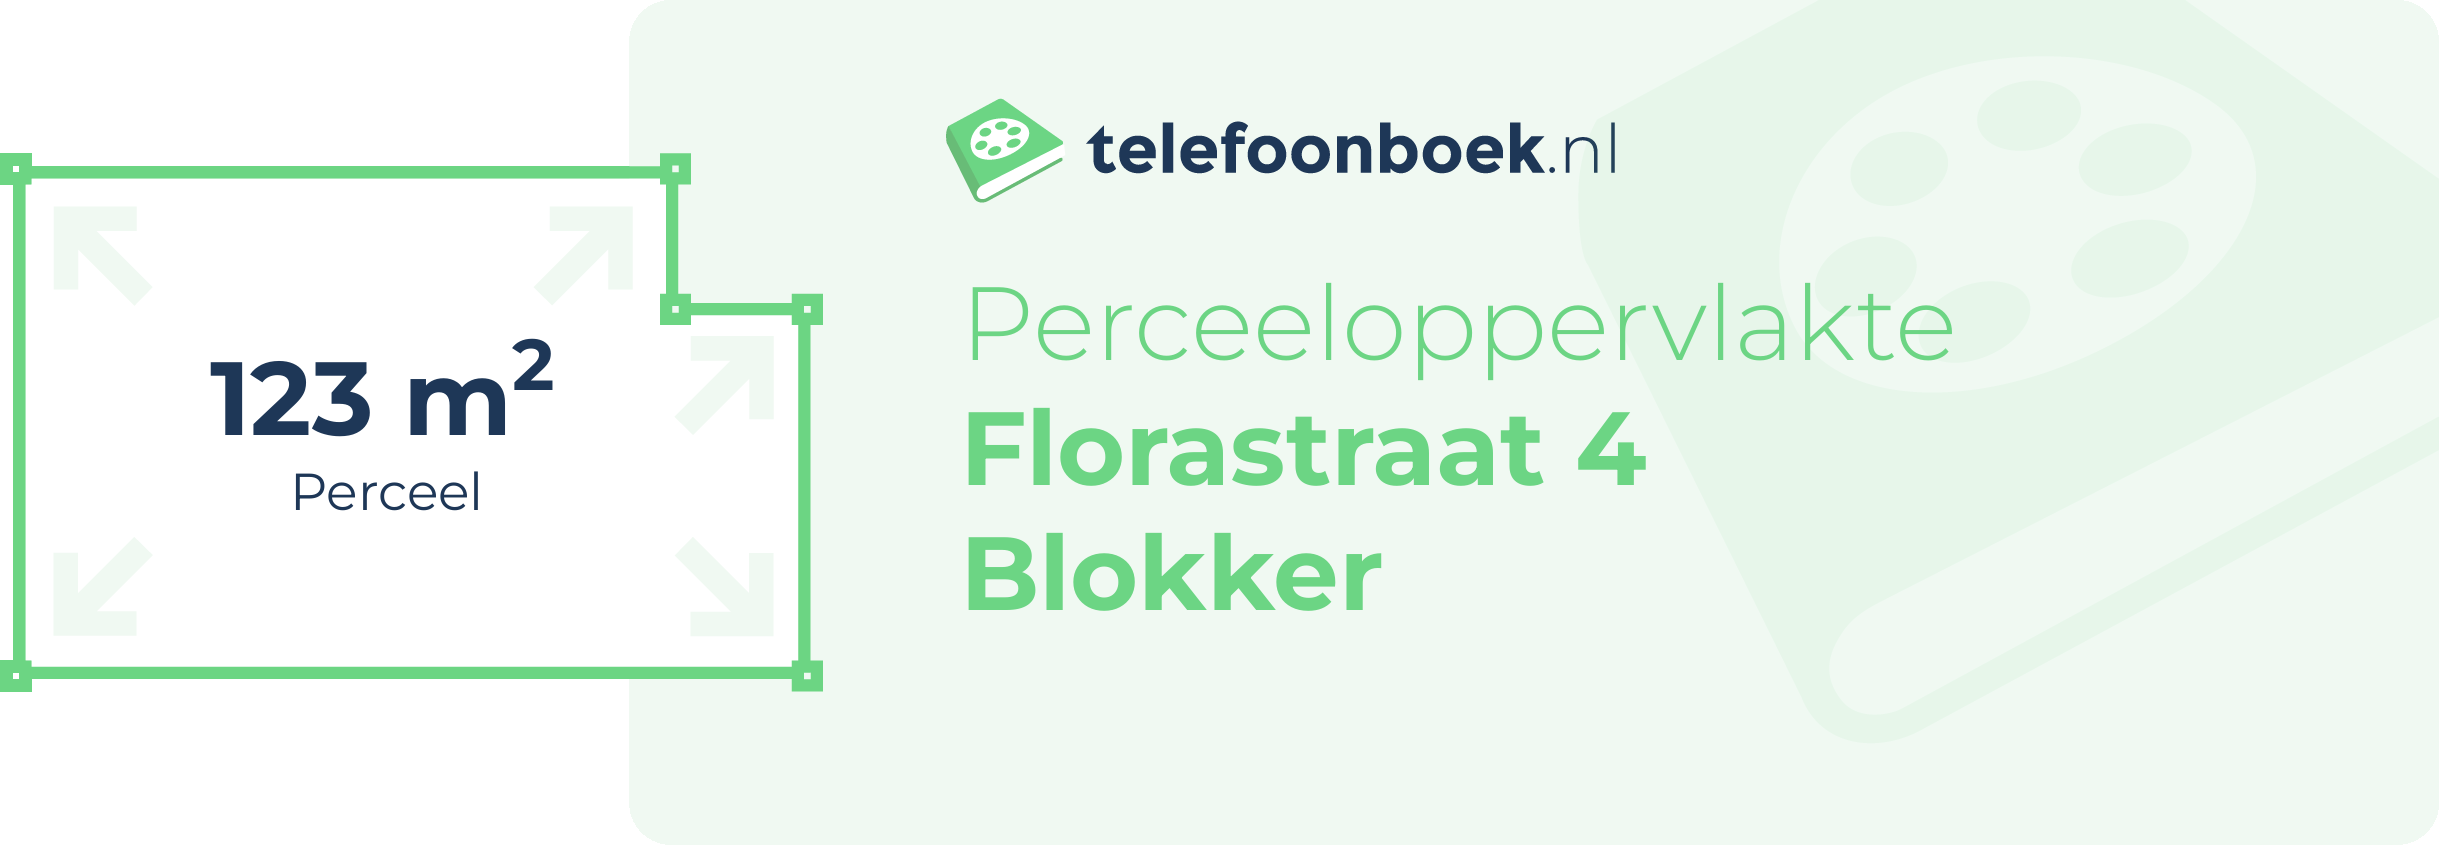 Perceeloppervlakte Florastraat 4 Blokker